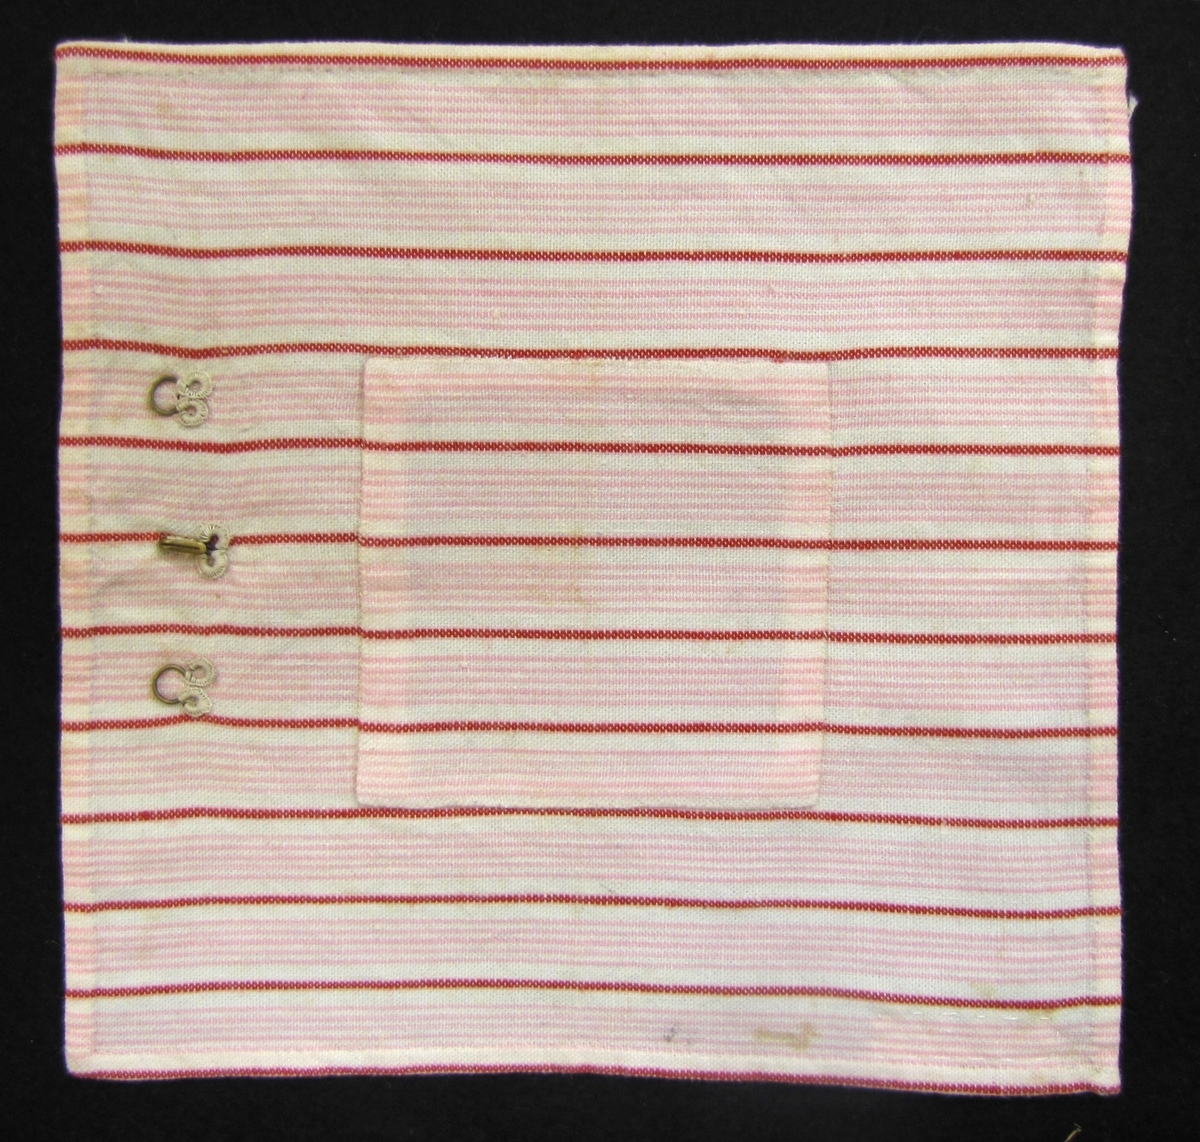 Prov på lappning av lapp på textil. Tygstycke,  randigt i vitt, rött och rosa med en fastsydd hake och två  hyskor. 17 x 18 cm.
Edit Tapper var mor till givarna.